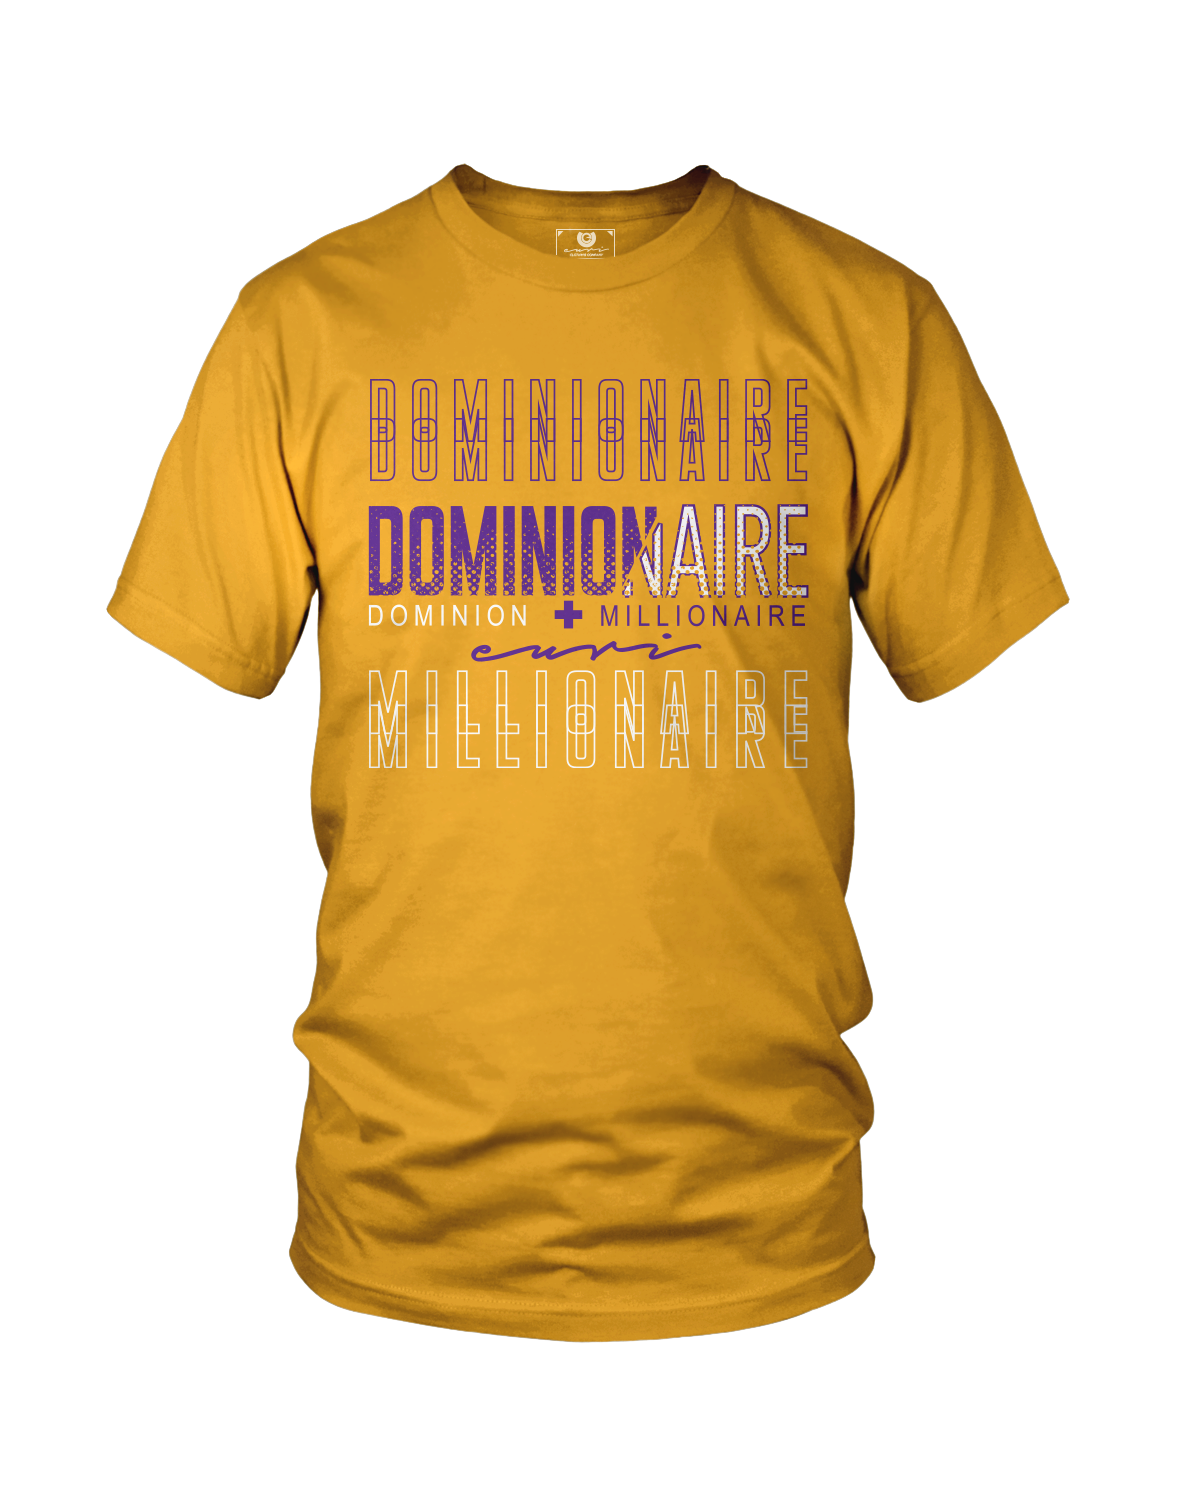 Dominionaire - Euri Clothing